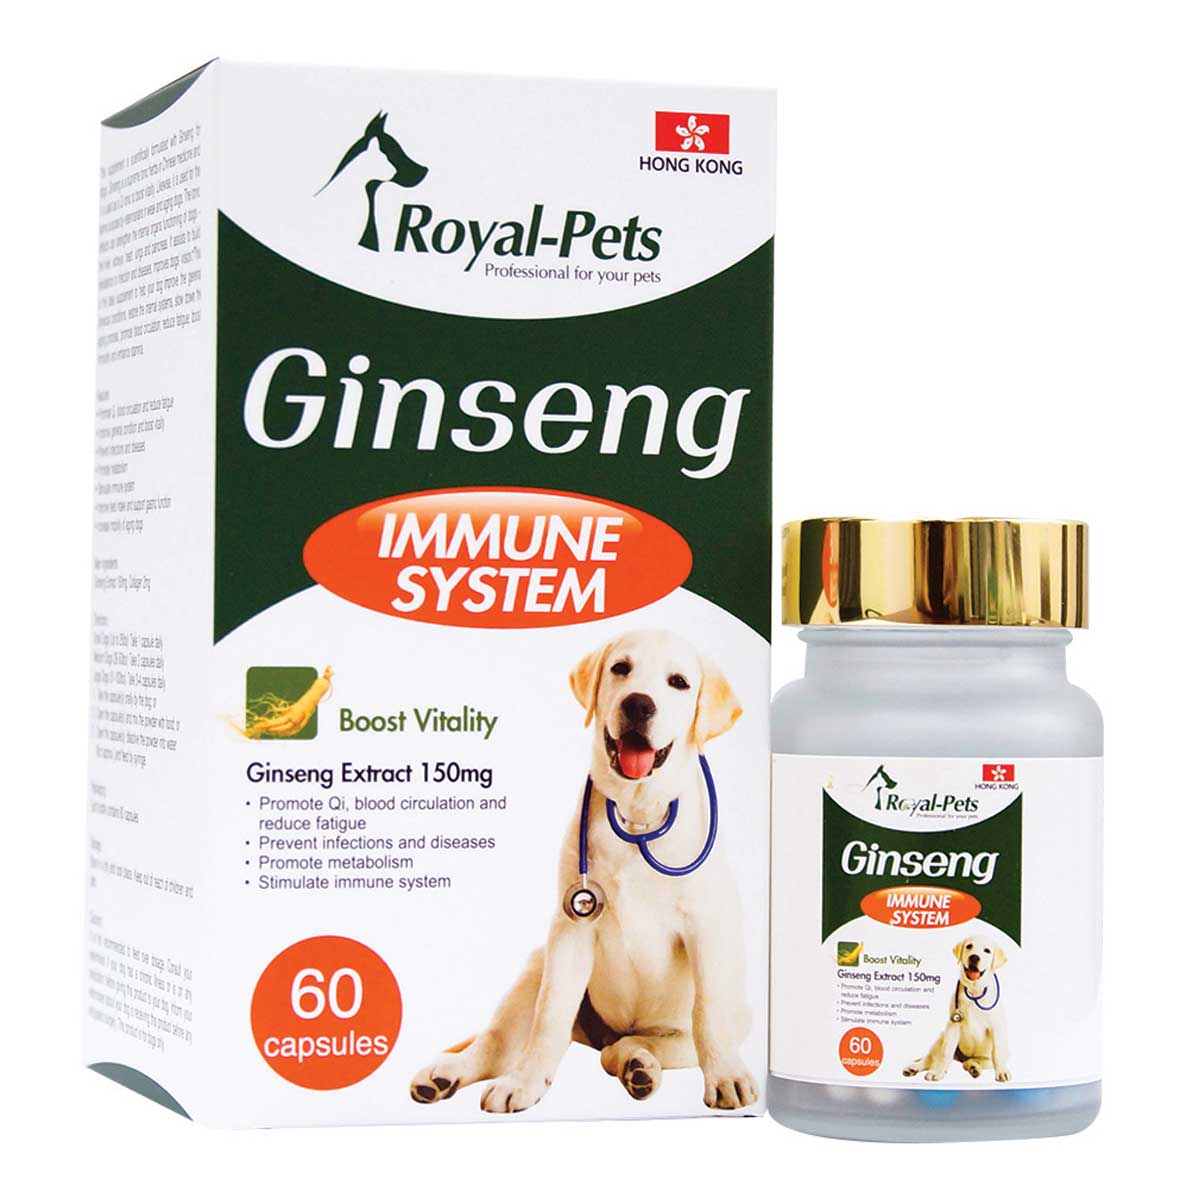 MAMA730 Royal-Pets 純活人蔘 60粒膠囊 Royal-Pets Ginseng Extract 150mg 60 capsules